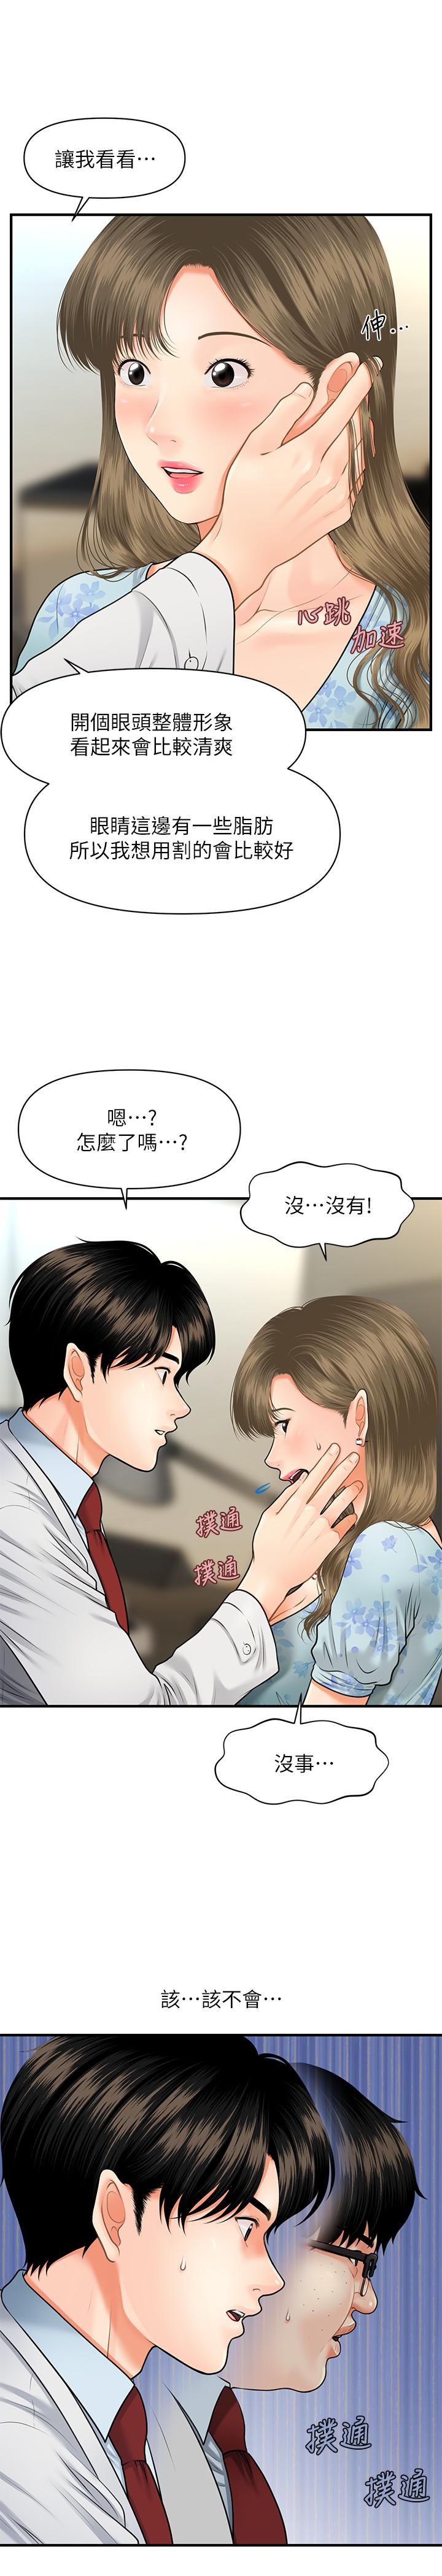 韩国污漫画 醫美奇雞 第5话-在诊间发生的羞羞事 27